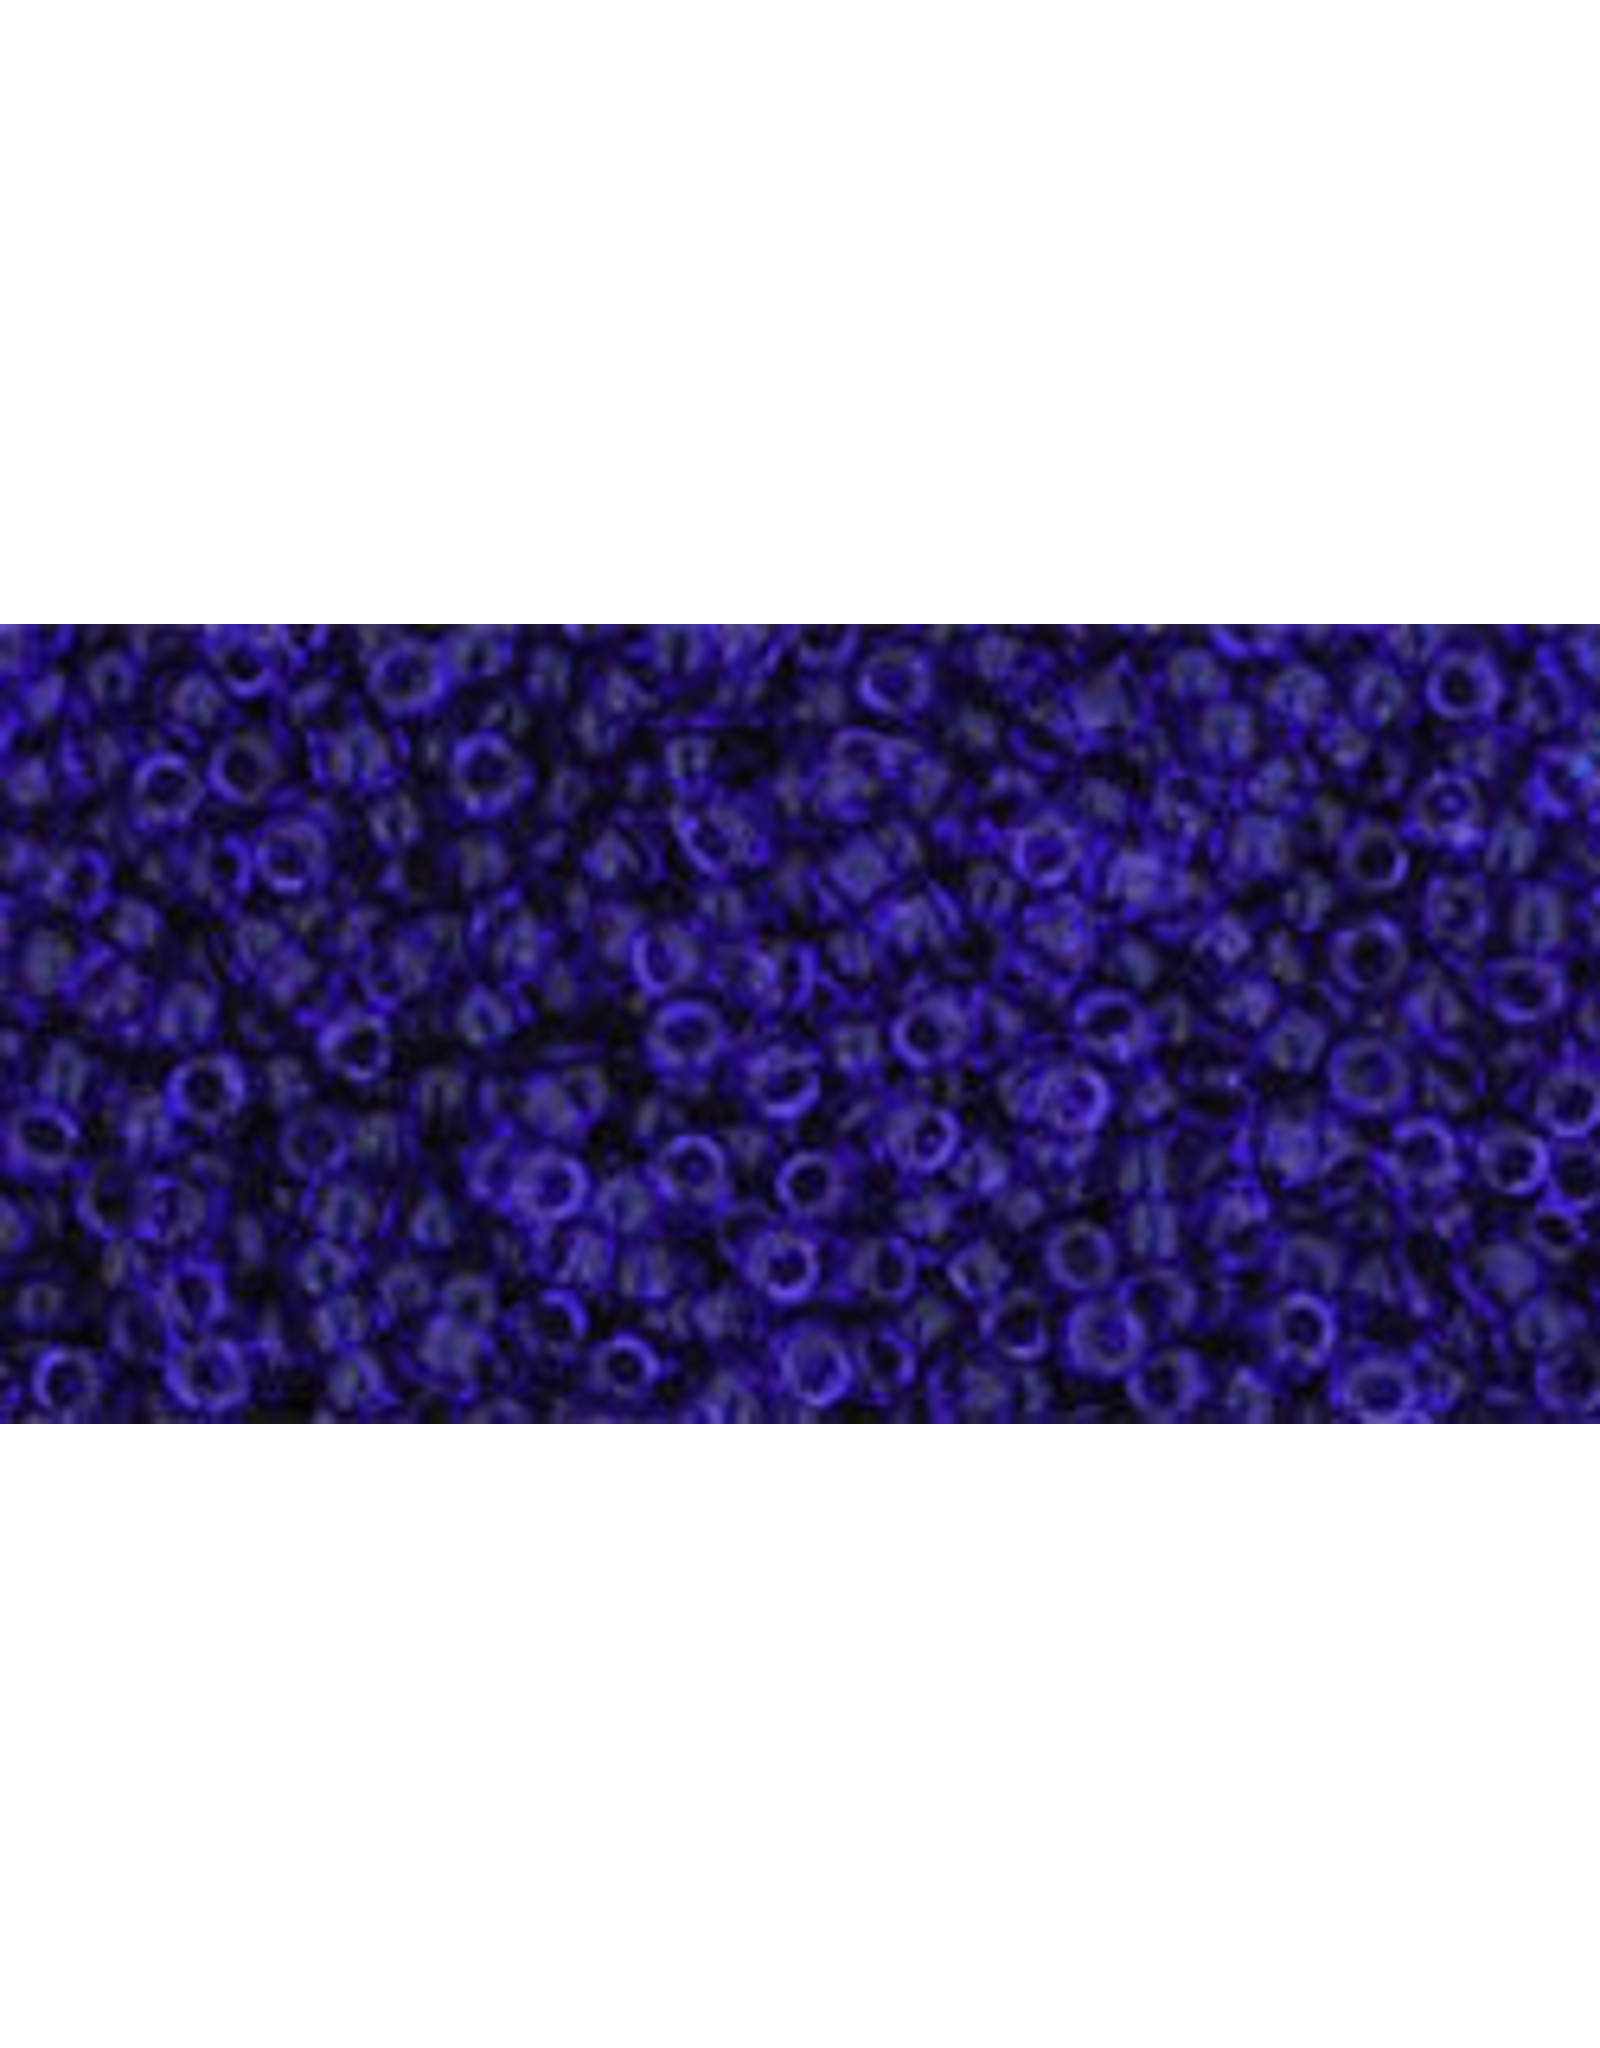 8B 15 Toho Seed 20g Transparent Cobalt Blue